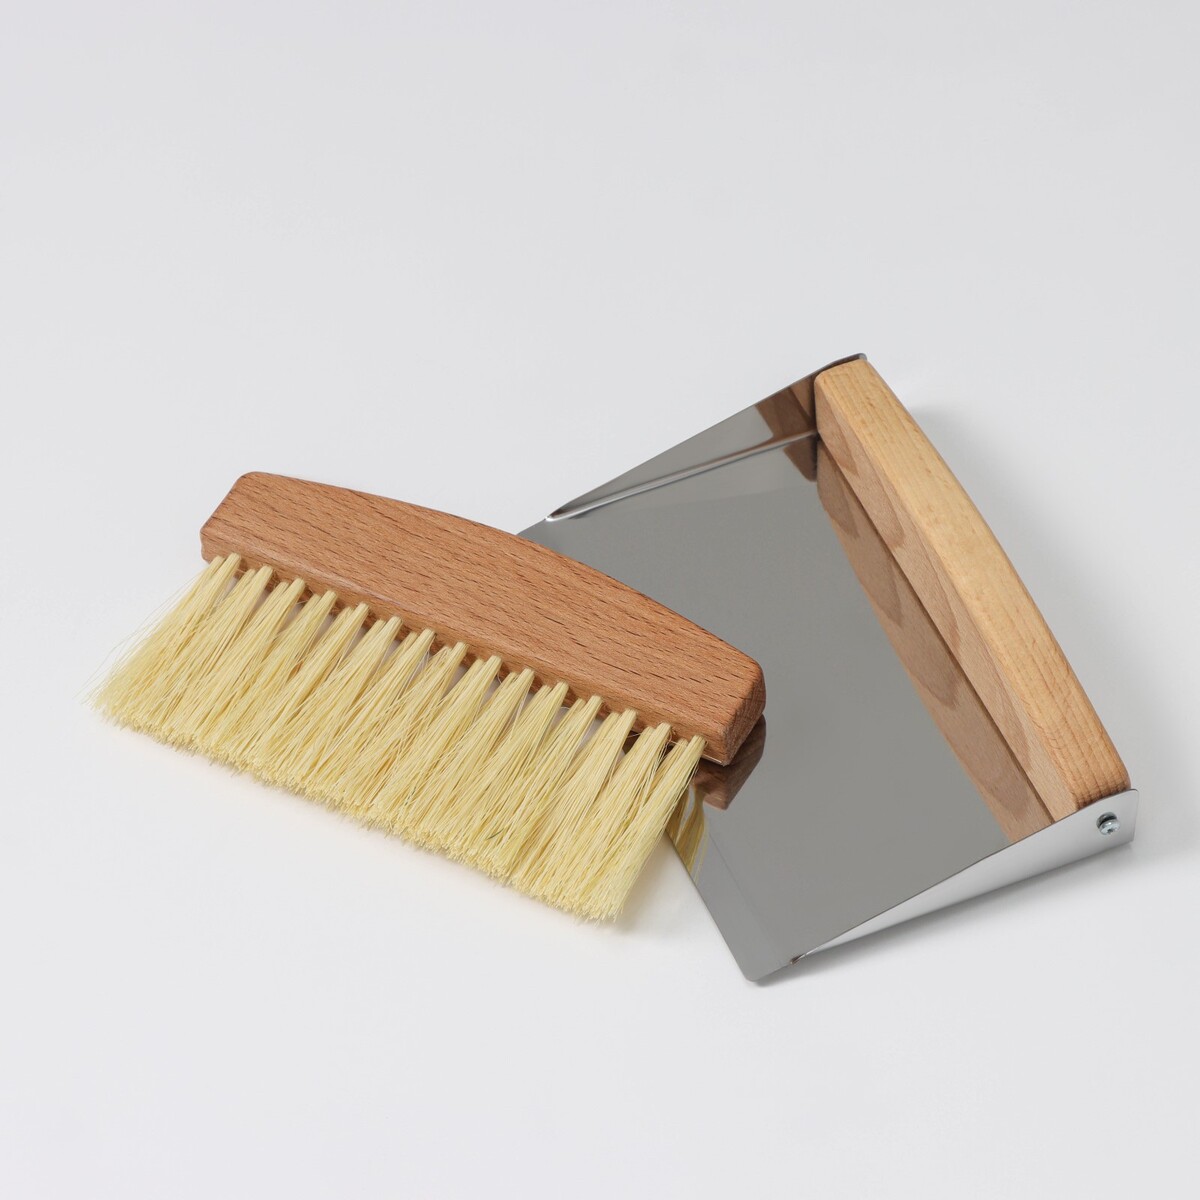 Набор для уборки: совок и щетка, 16×10,5×4 см, 16×4×1,6 см, 30 пучков, натуральный волос набор для уборки 4 предмета совок щетка сметка 2 универсальные щетки